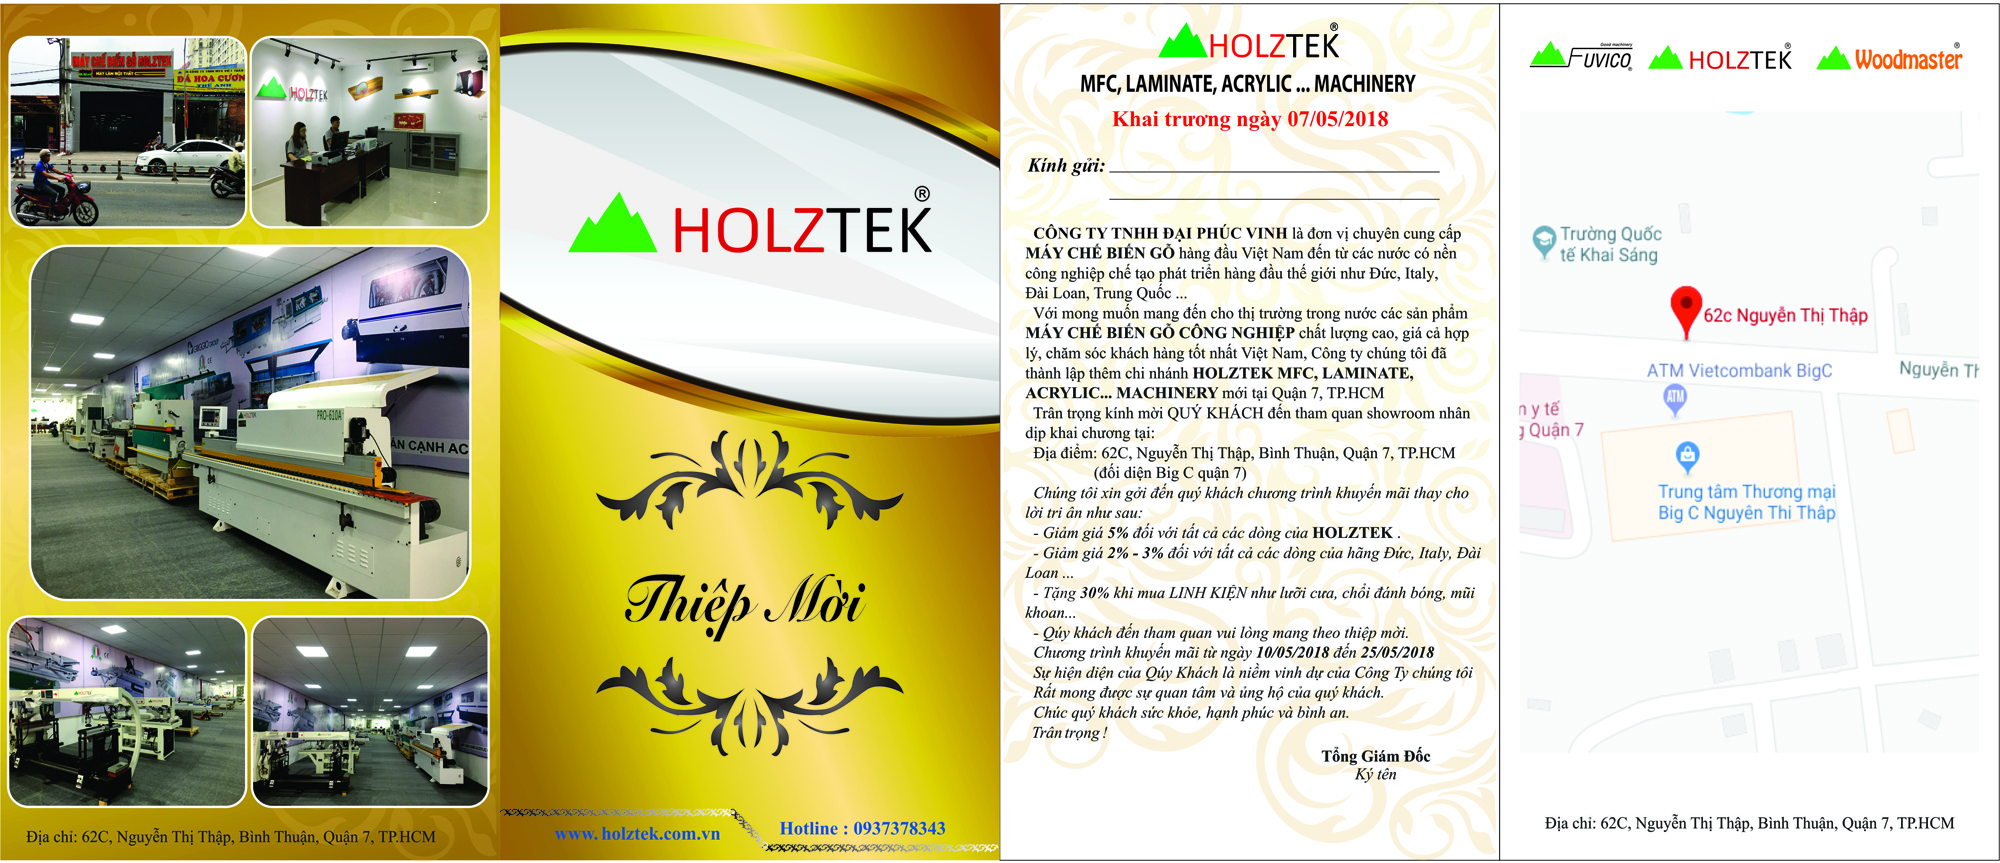 Khuyến mãi lớn nhân dịp khai trương Holztek Q.7